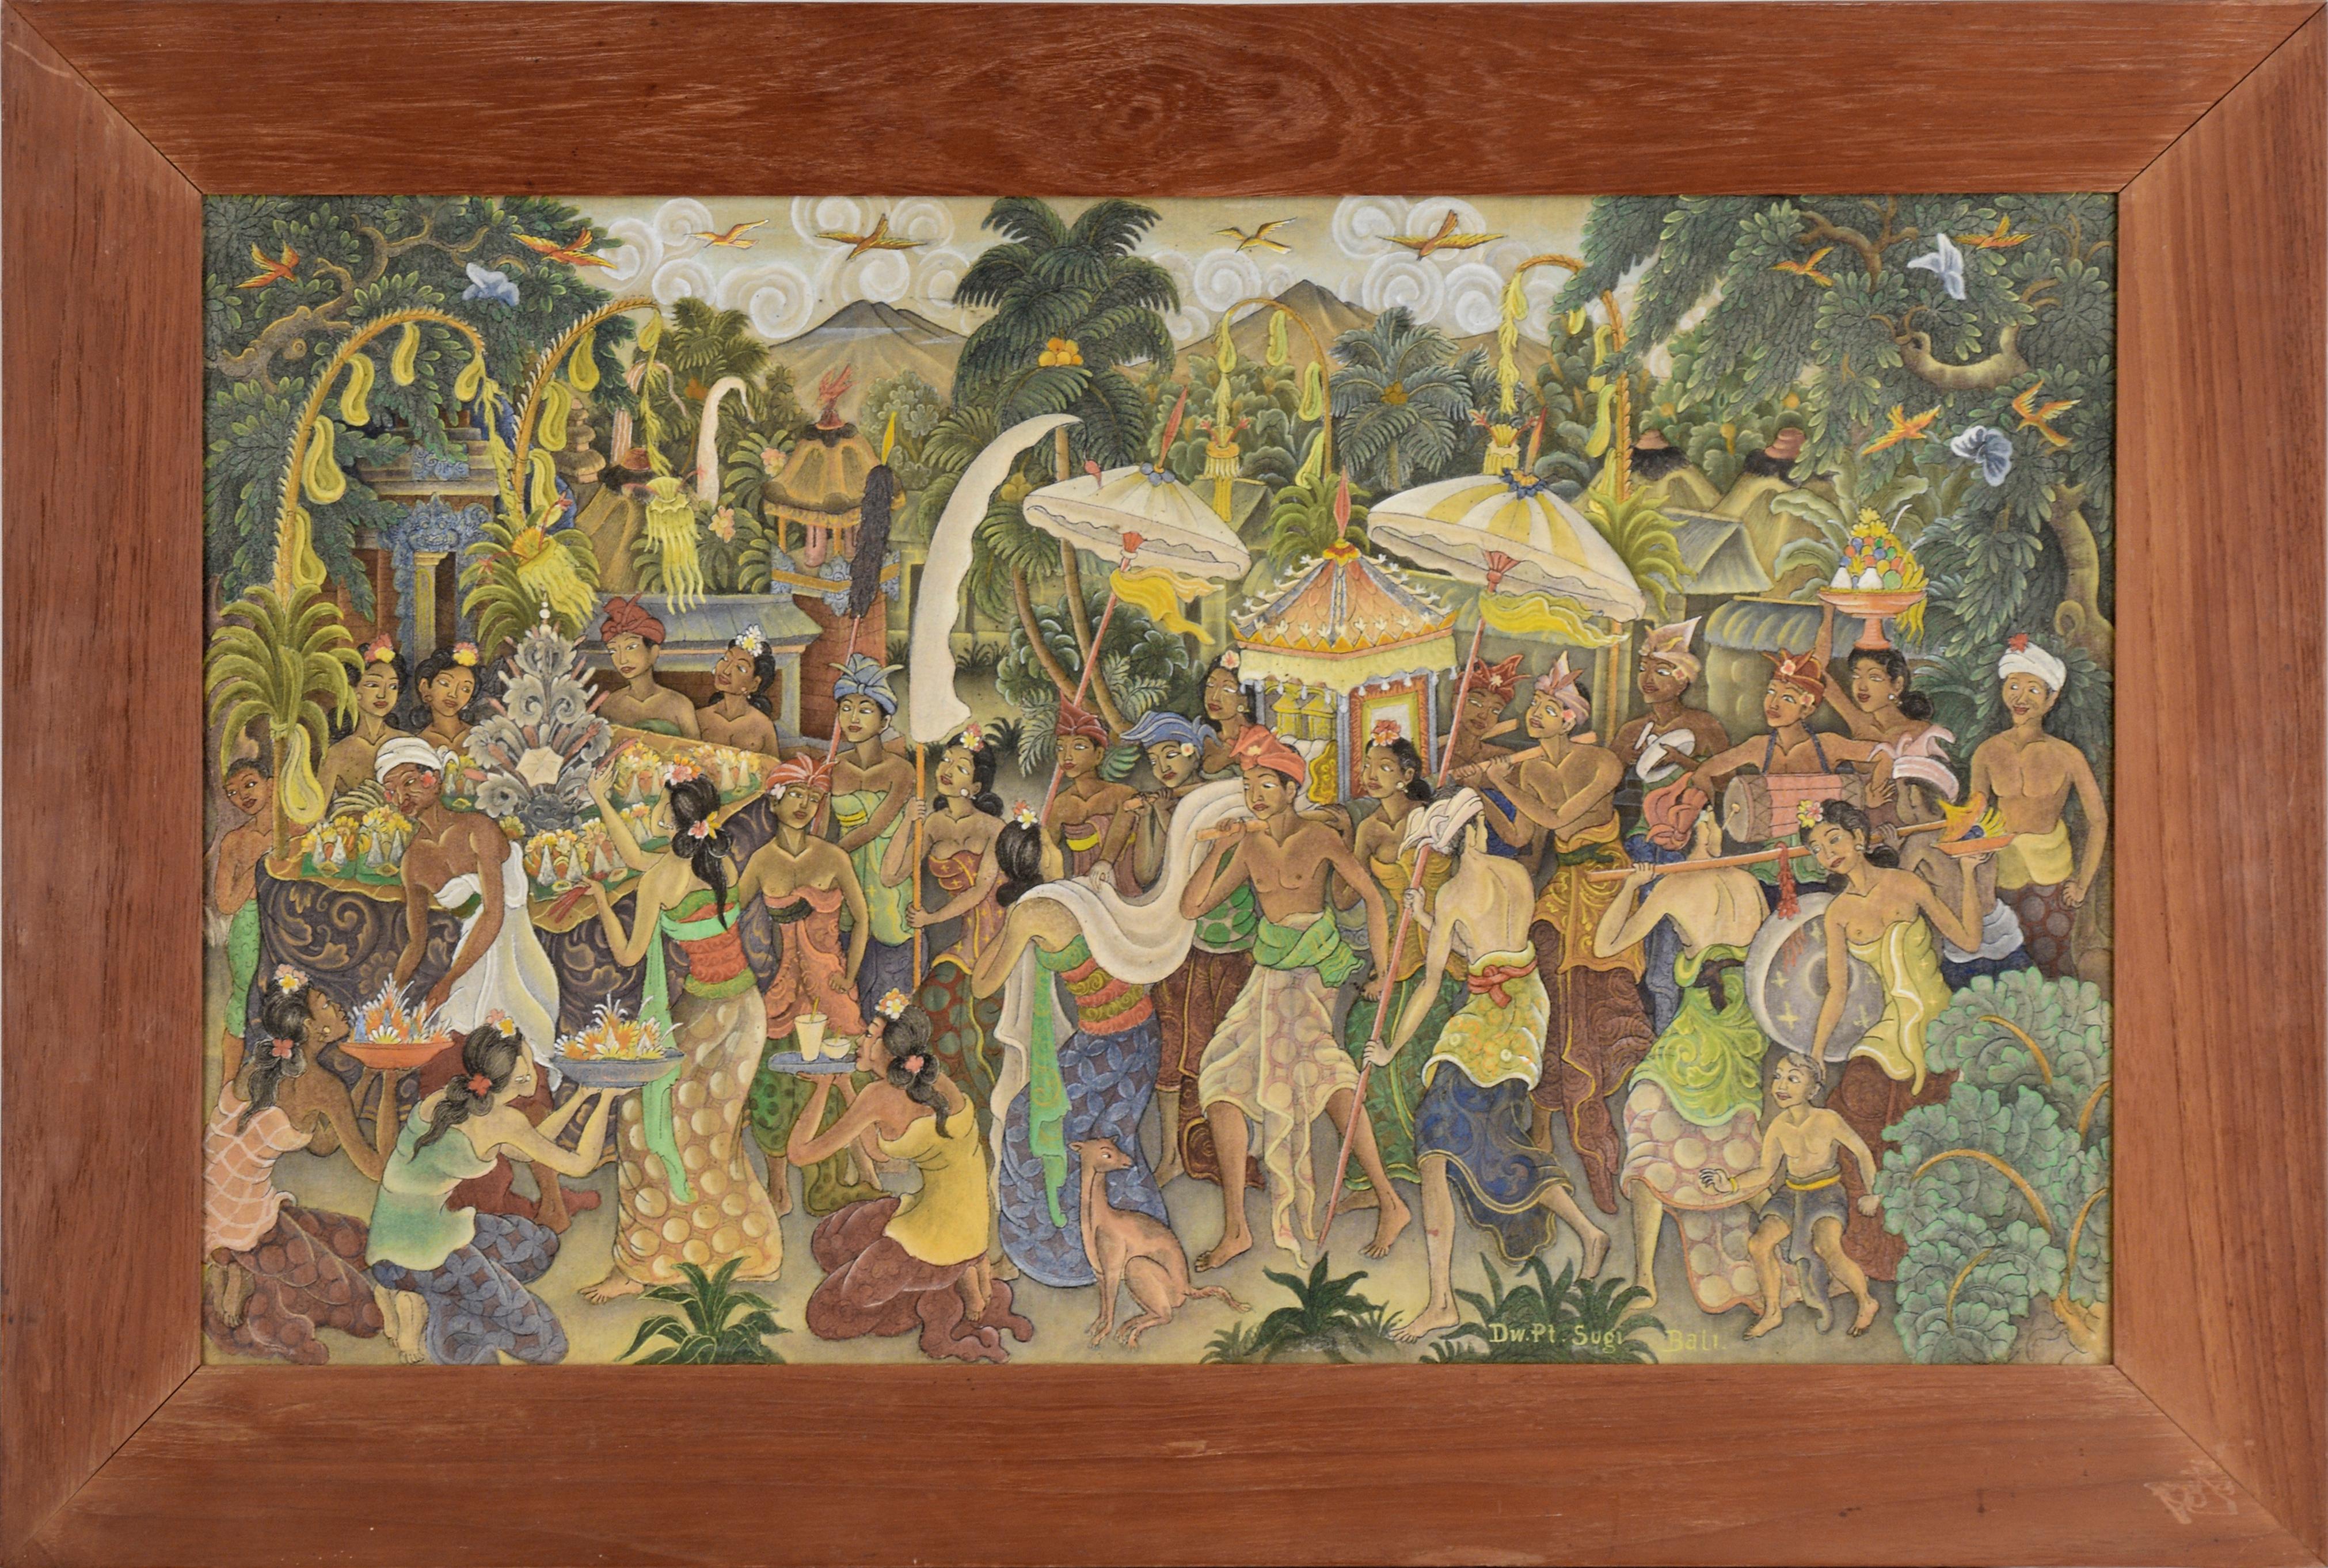 Procession de village de Jungle à Bali, représentation figurative indonésienne 